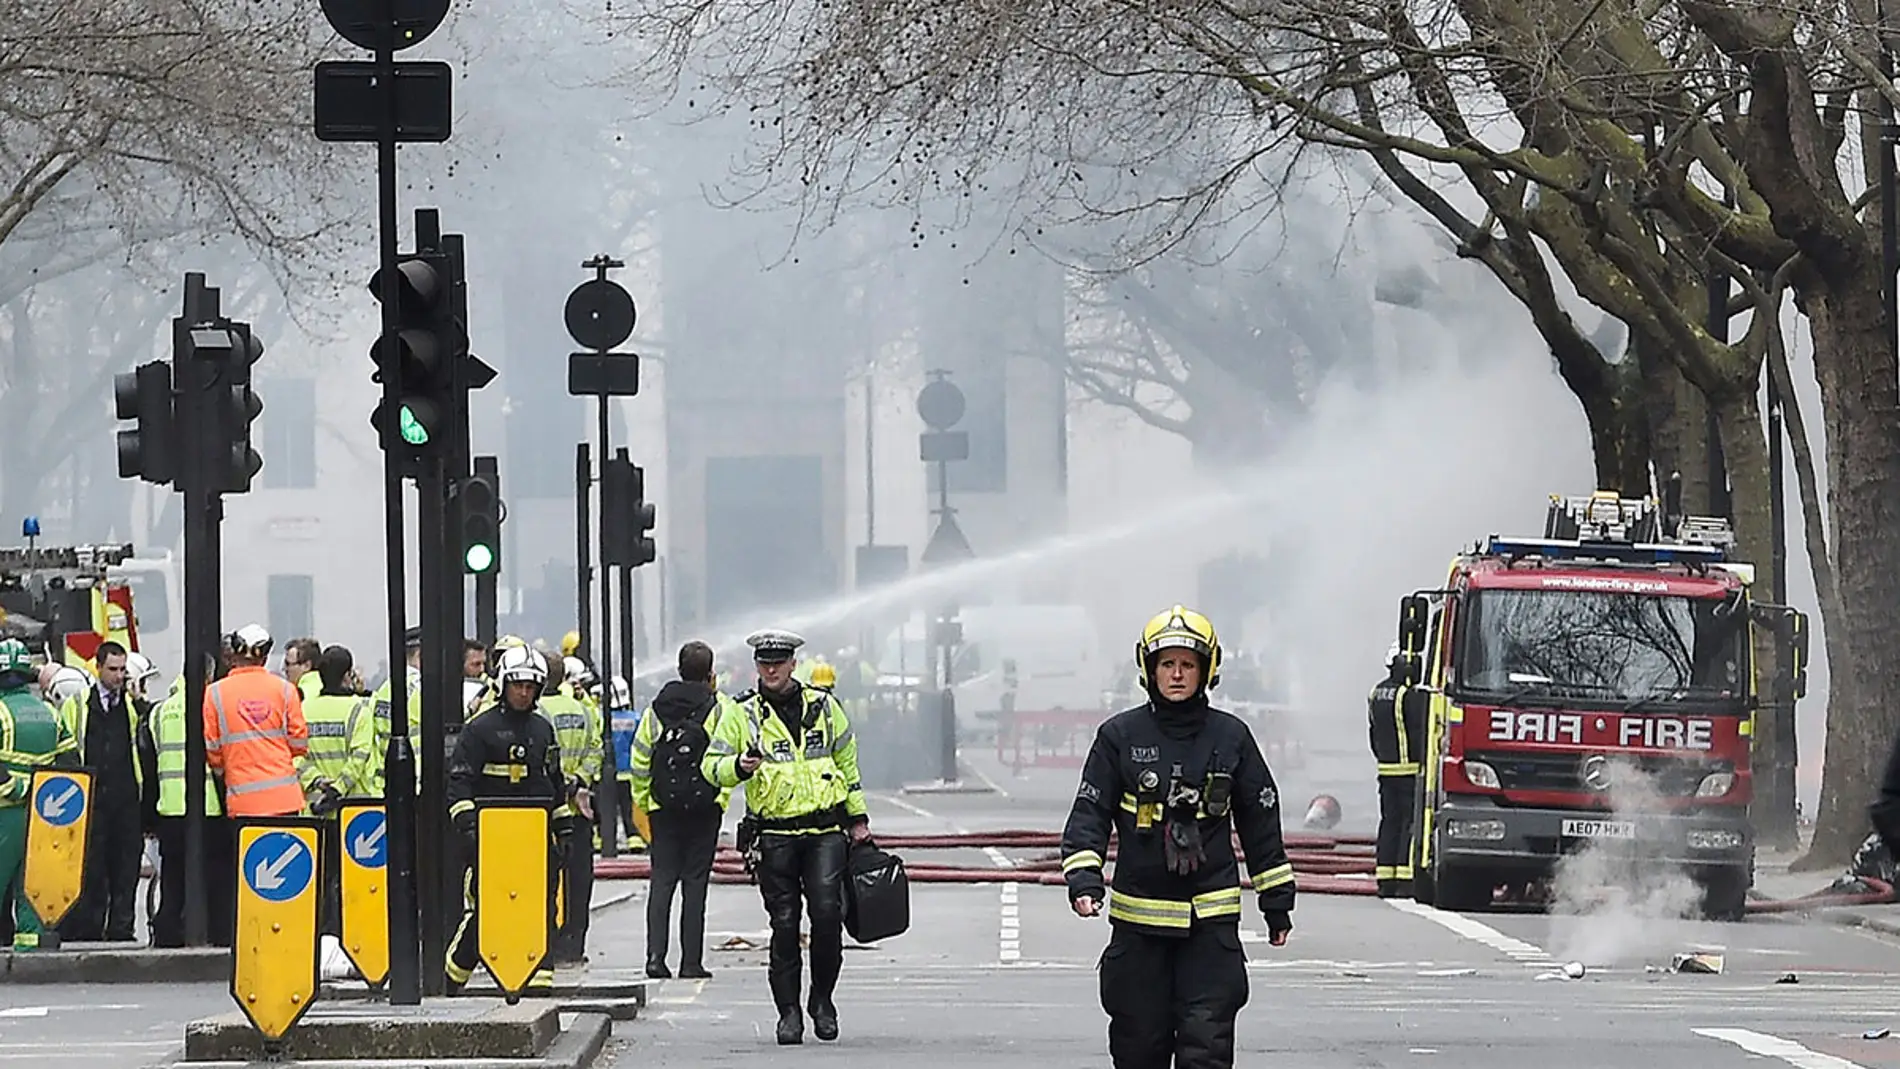 Efectivos de los bomberos luchan contra el fuego en Londres